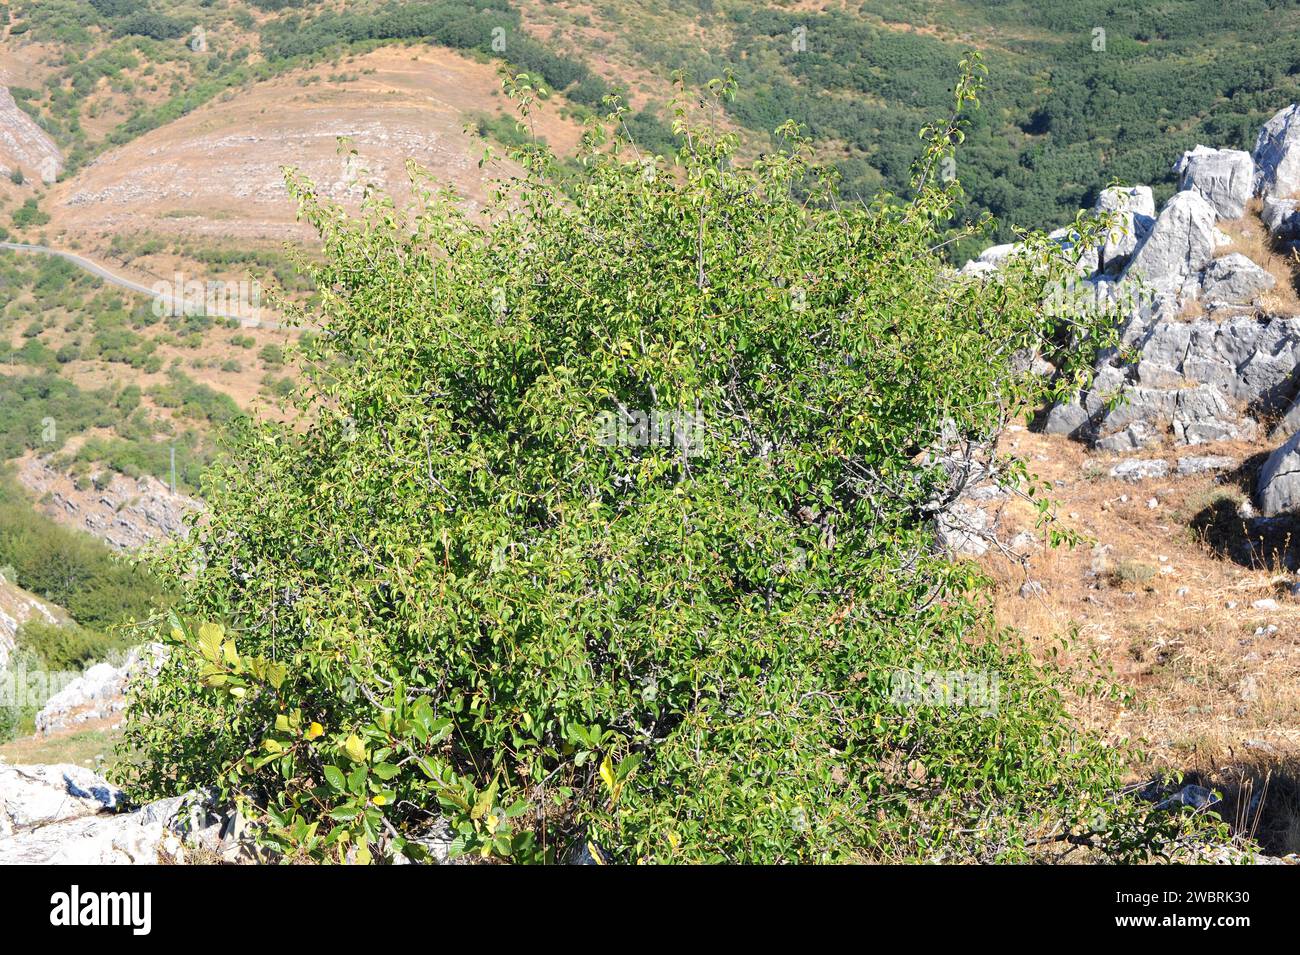 St. Le cerisier de Lucie (Prunus mahaleb) est un arbuste à feuilles caduques ou un petit arbre originaire du bassin méditerranéen. Ses graines fournissent une essence utilisée pour la cuisson. THI Banque D'Images